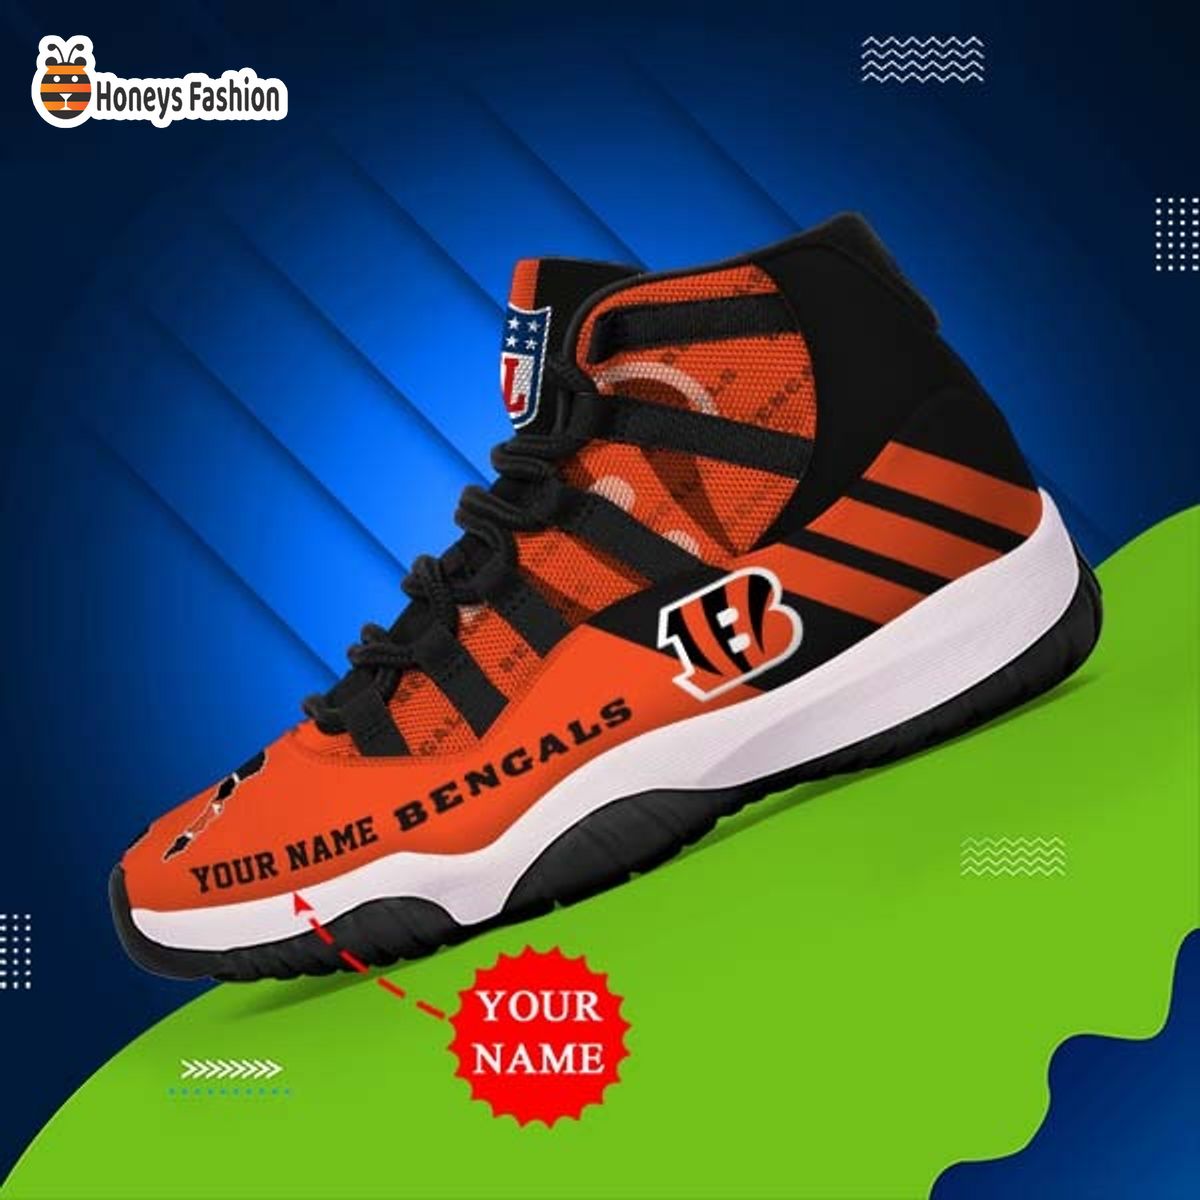 Cincinnati Bengals NFL Adidas Personalized Air Jordan 11 Shoes